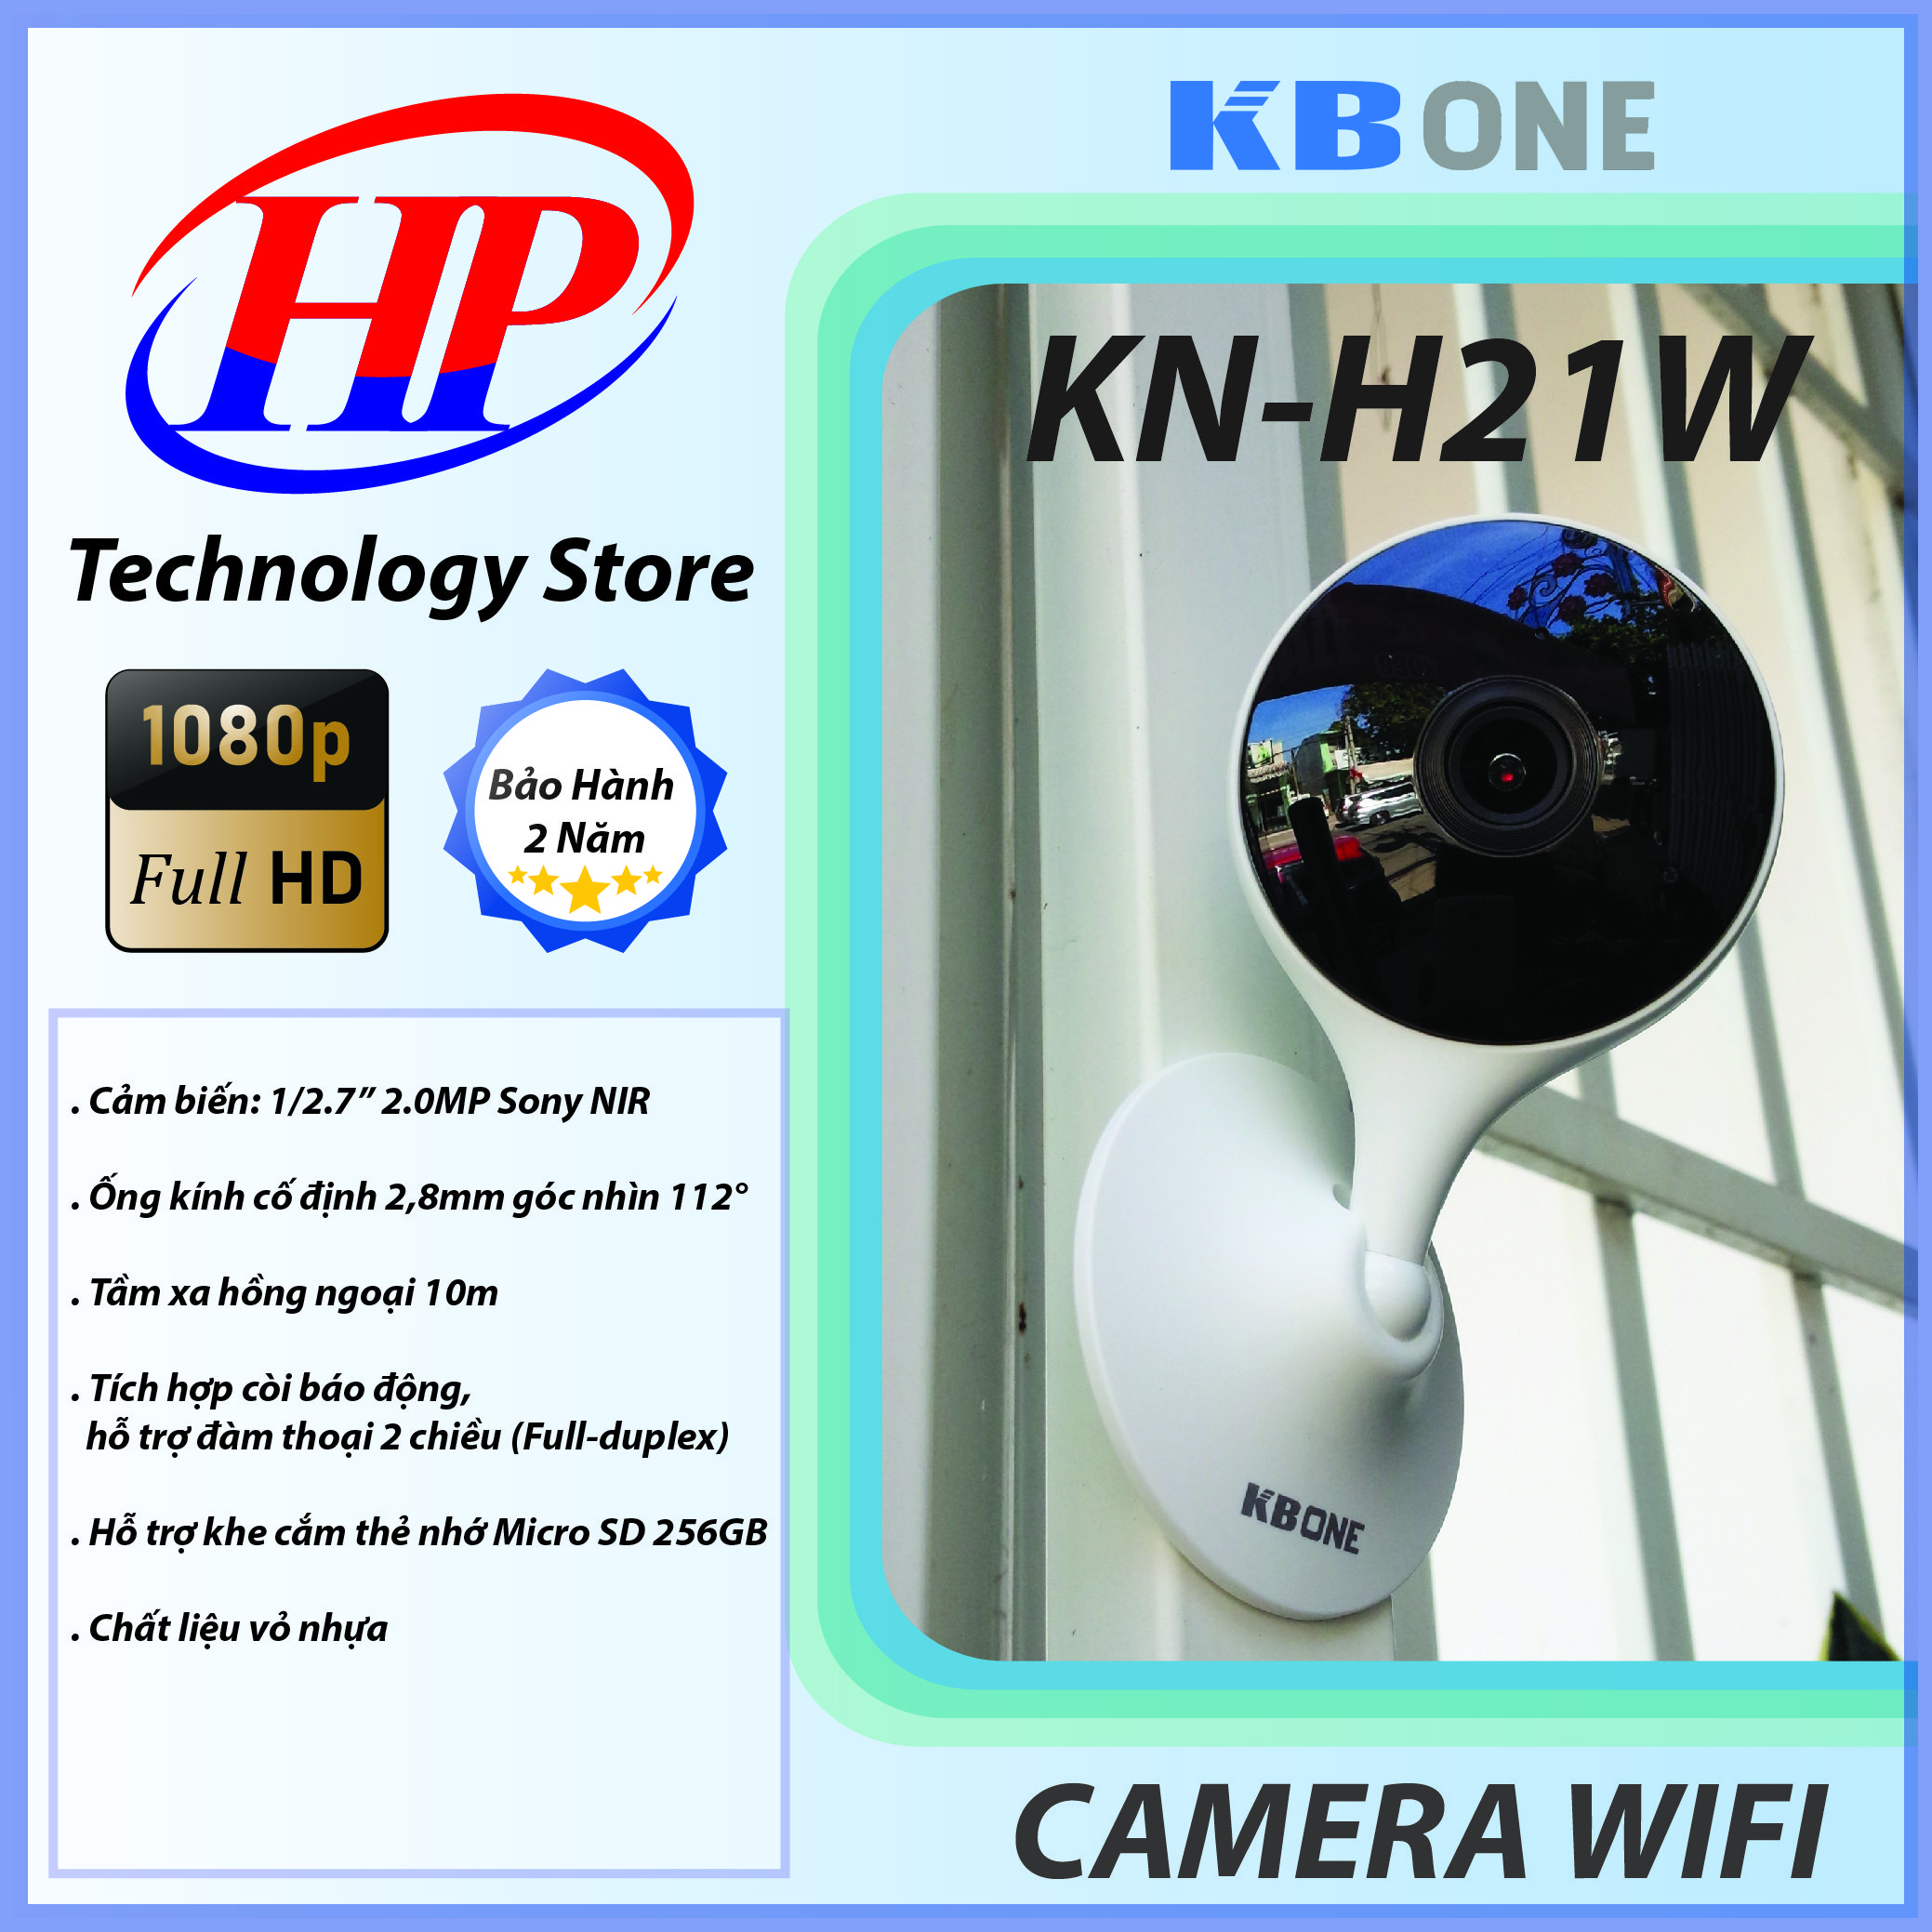 Camera IP WiFi KBONE KN-H21W 2.0 Megapixel, Tích Hợp Còi Báo Động